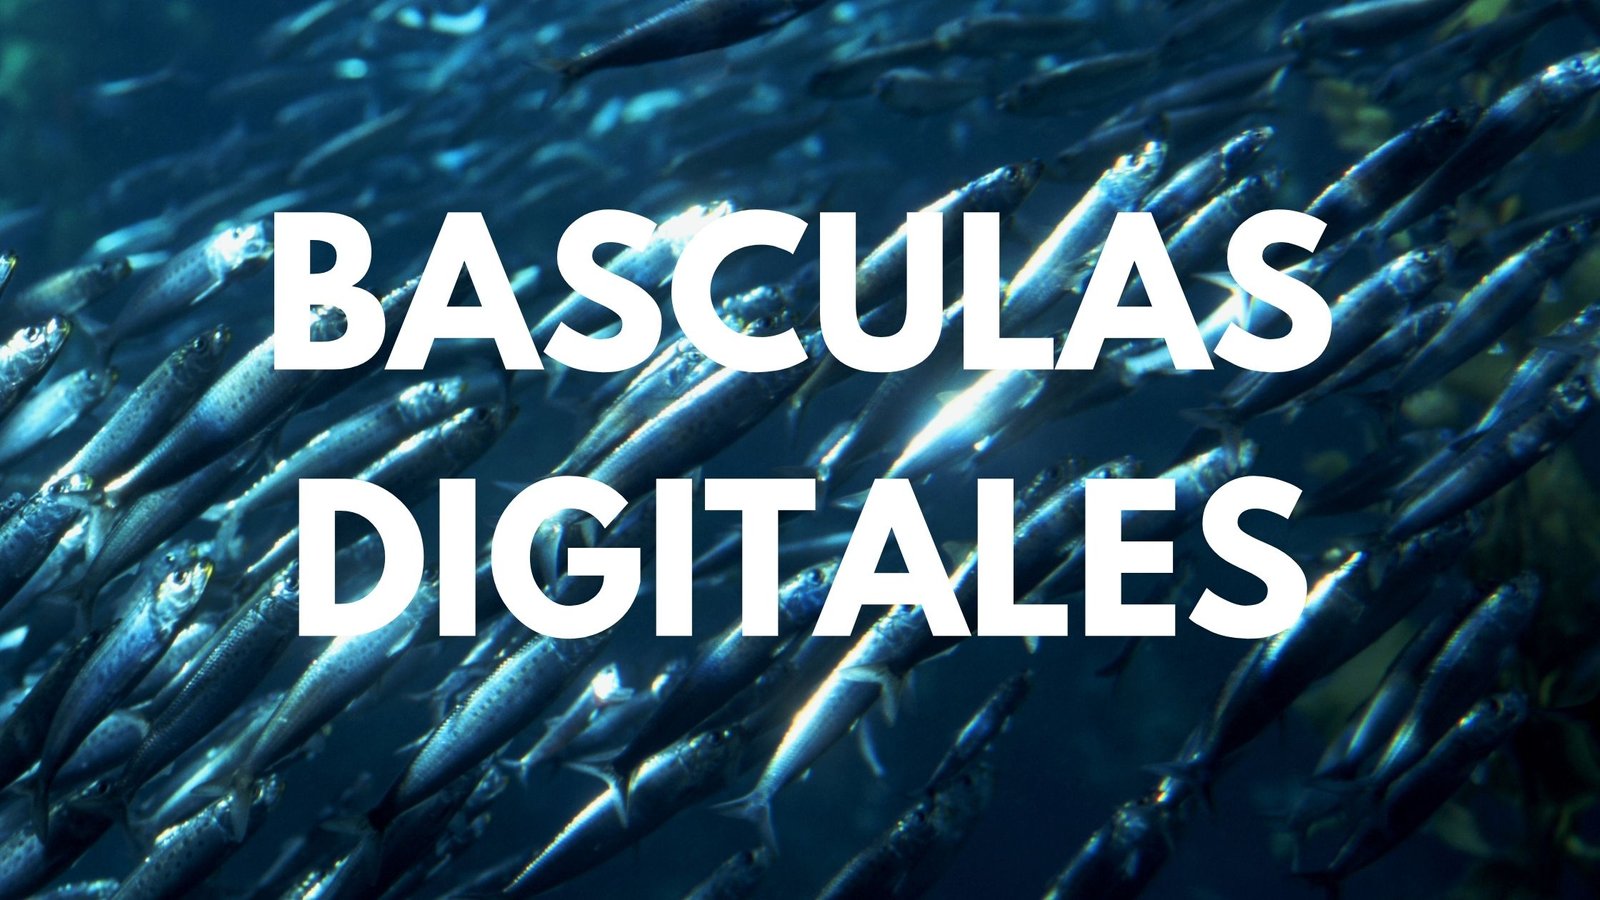 Basculas Digitales